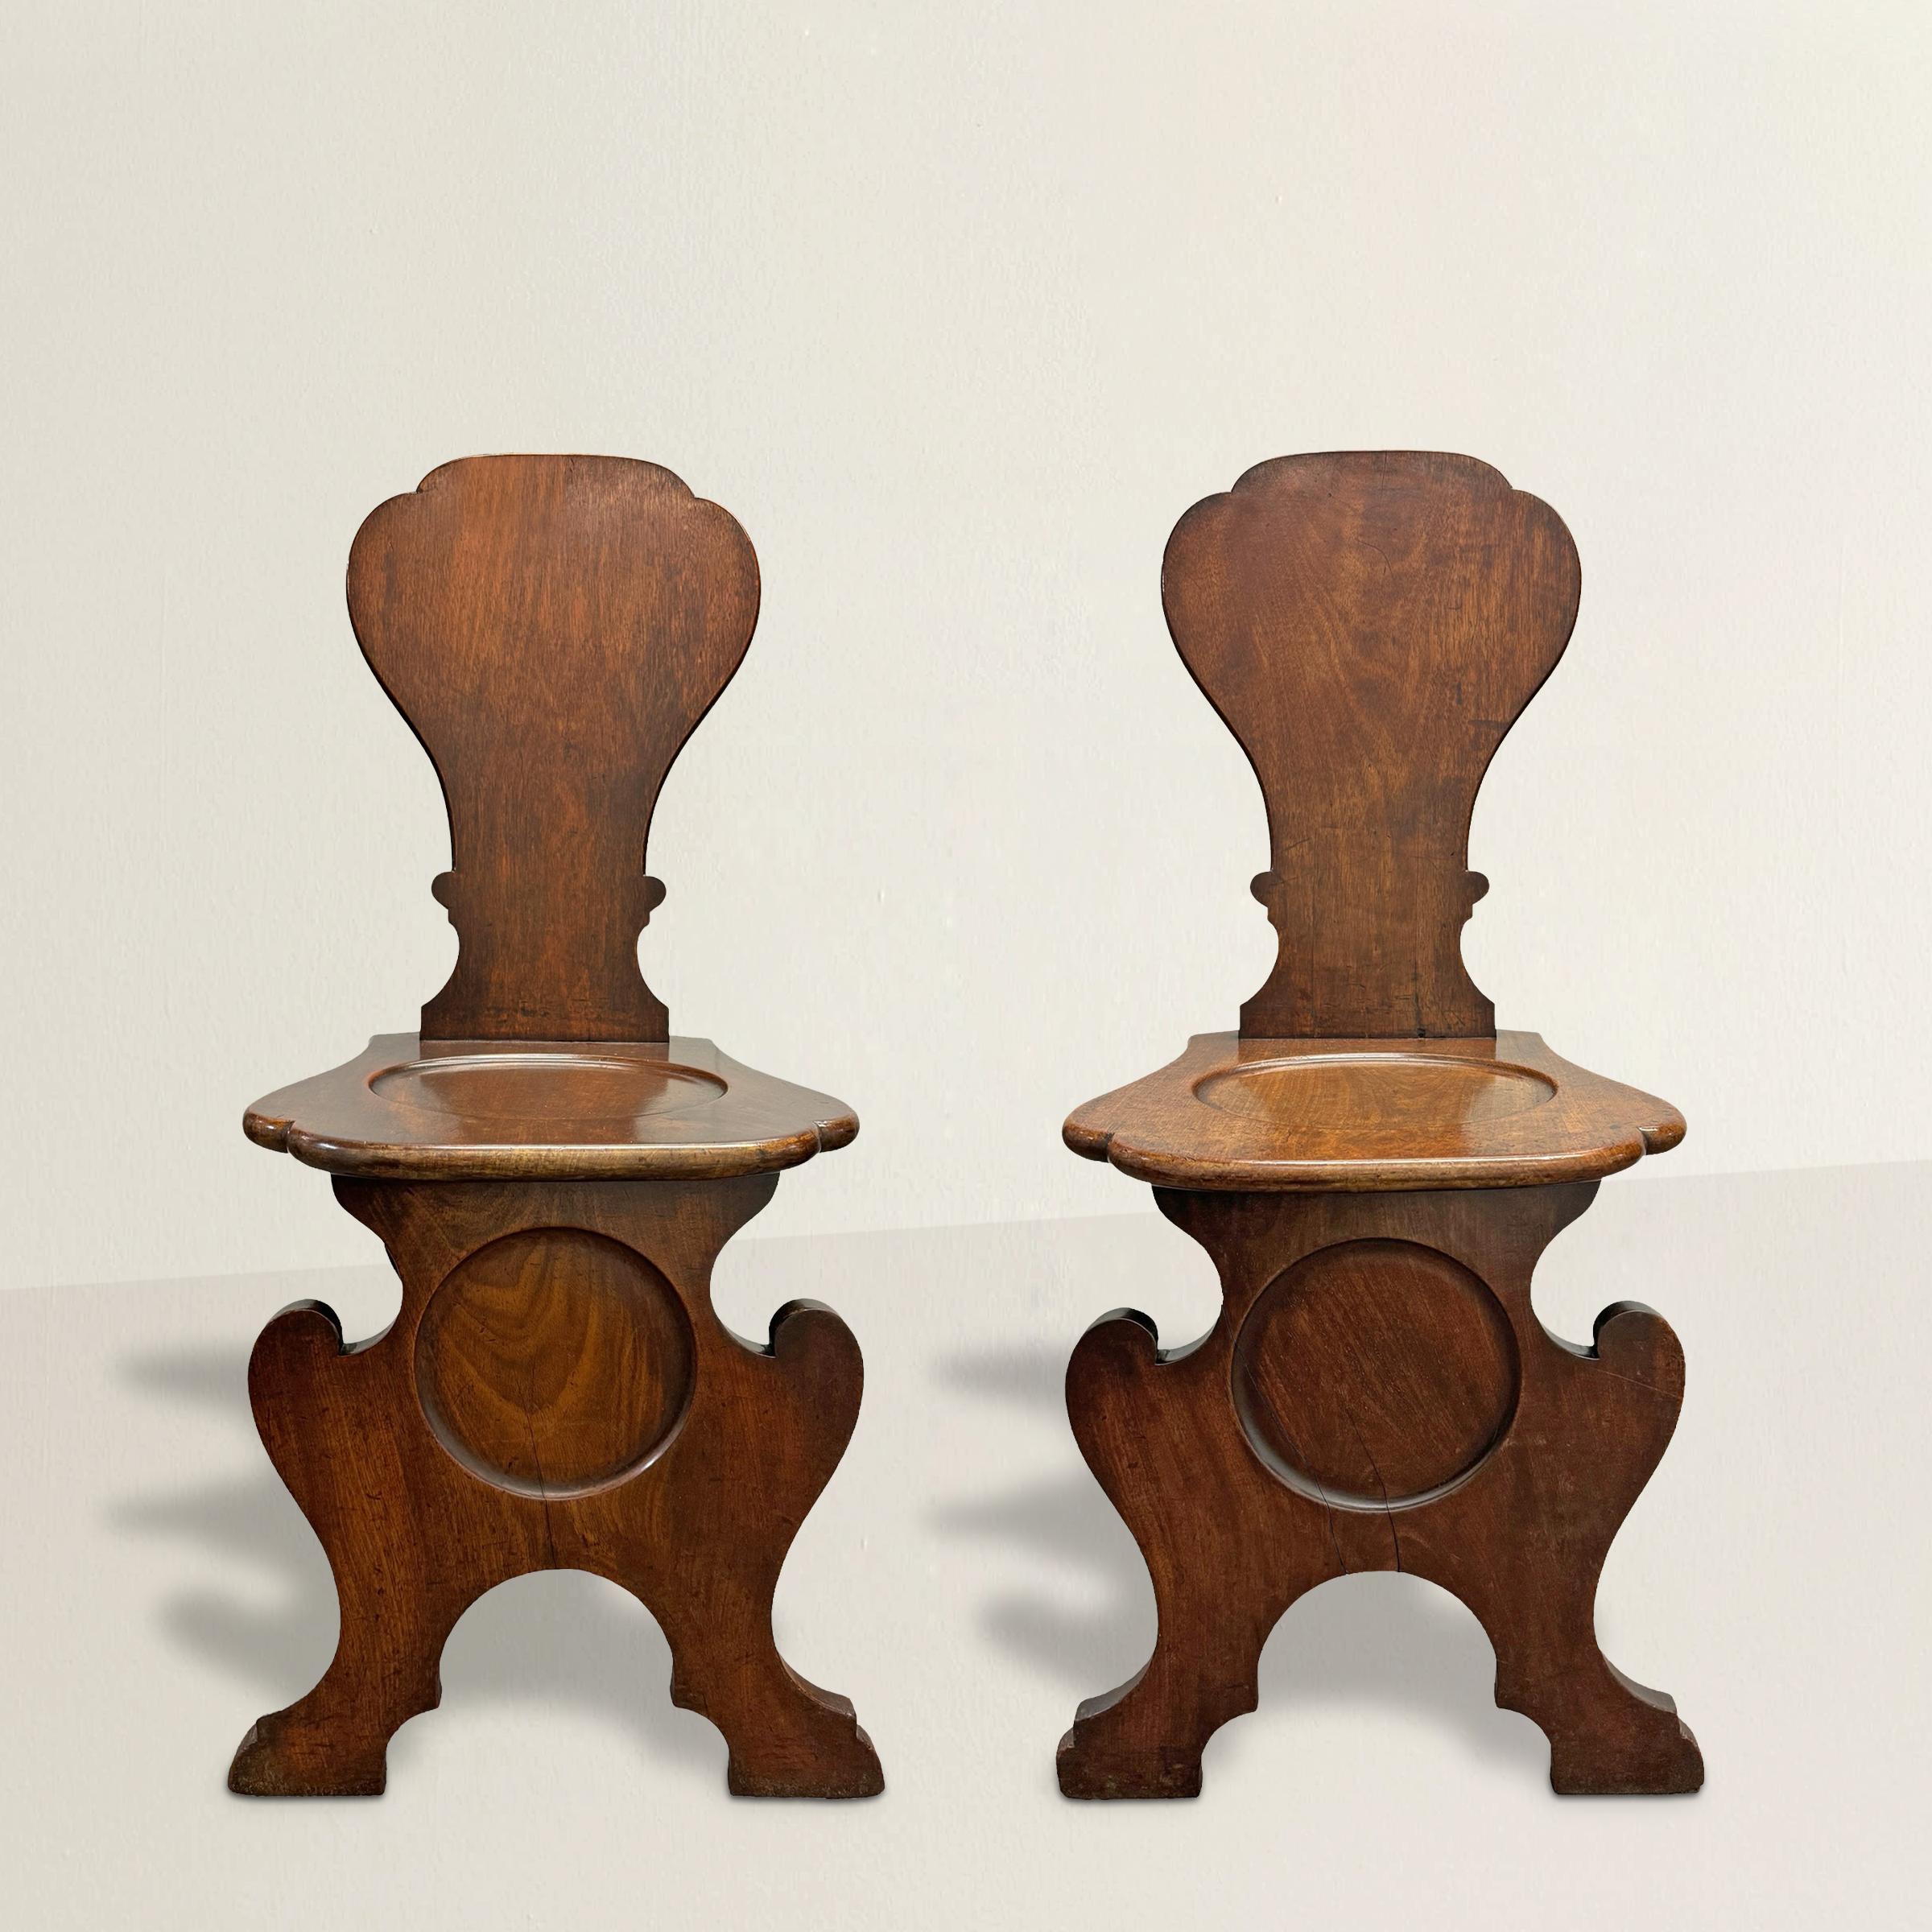 Diese exquisiten irischen Mahagoni-Sitzmöbel aus dem frühen 19. Jahrhundert, die in der Gabello-Form ausgeführt sind, sind außergewöhnliche Beispiele für den Stil und die Handwerkskunst der Epoche. Jeder Stuhl ist mit gewölbten Rondellen auf den